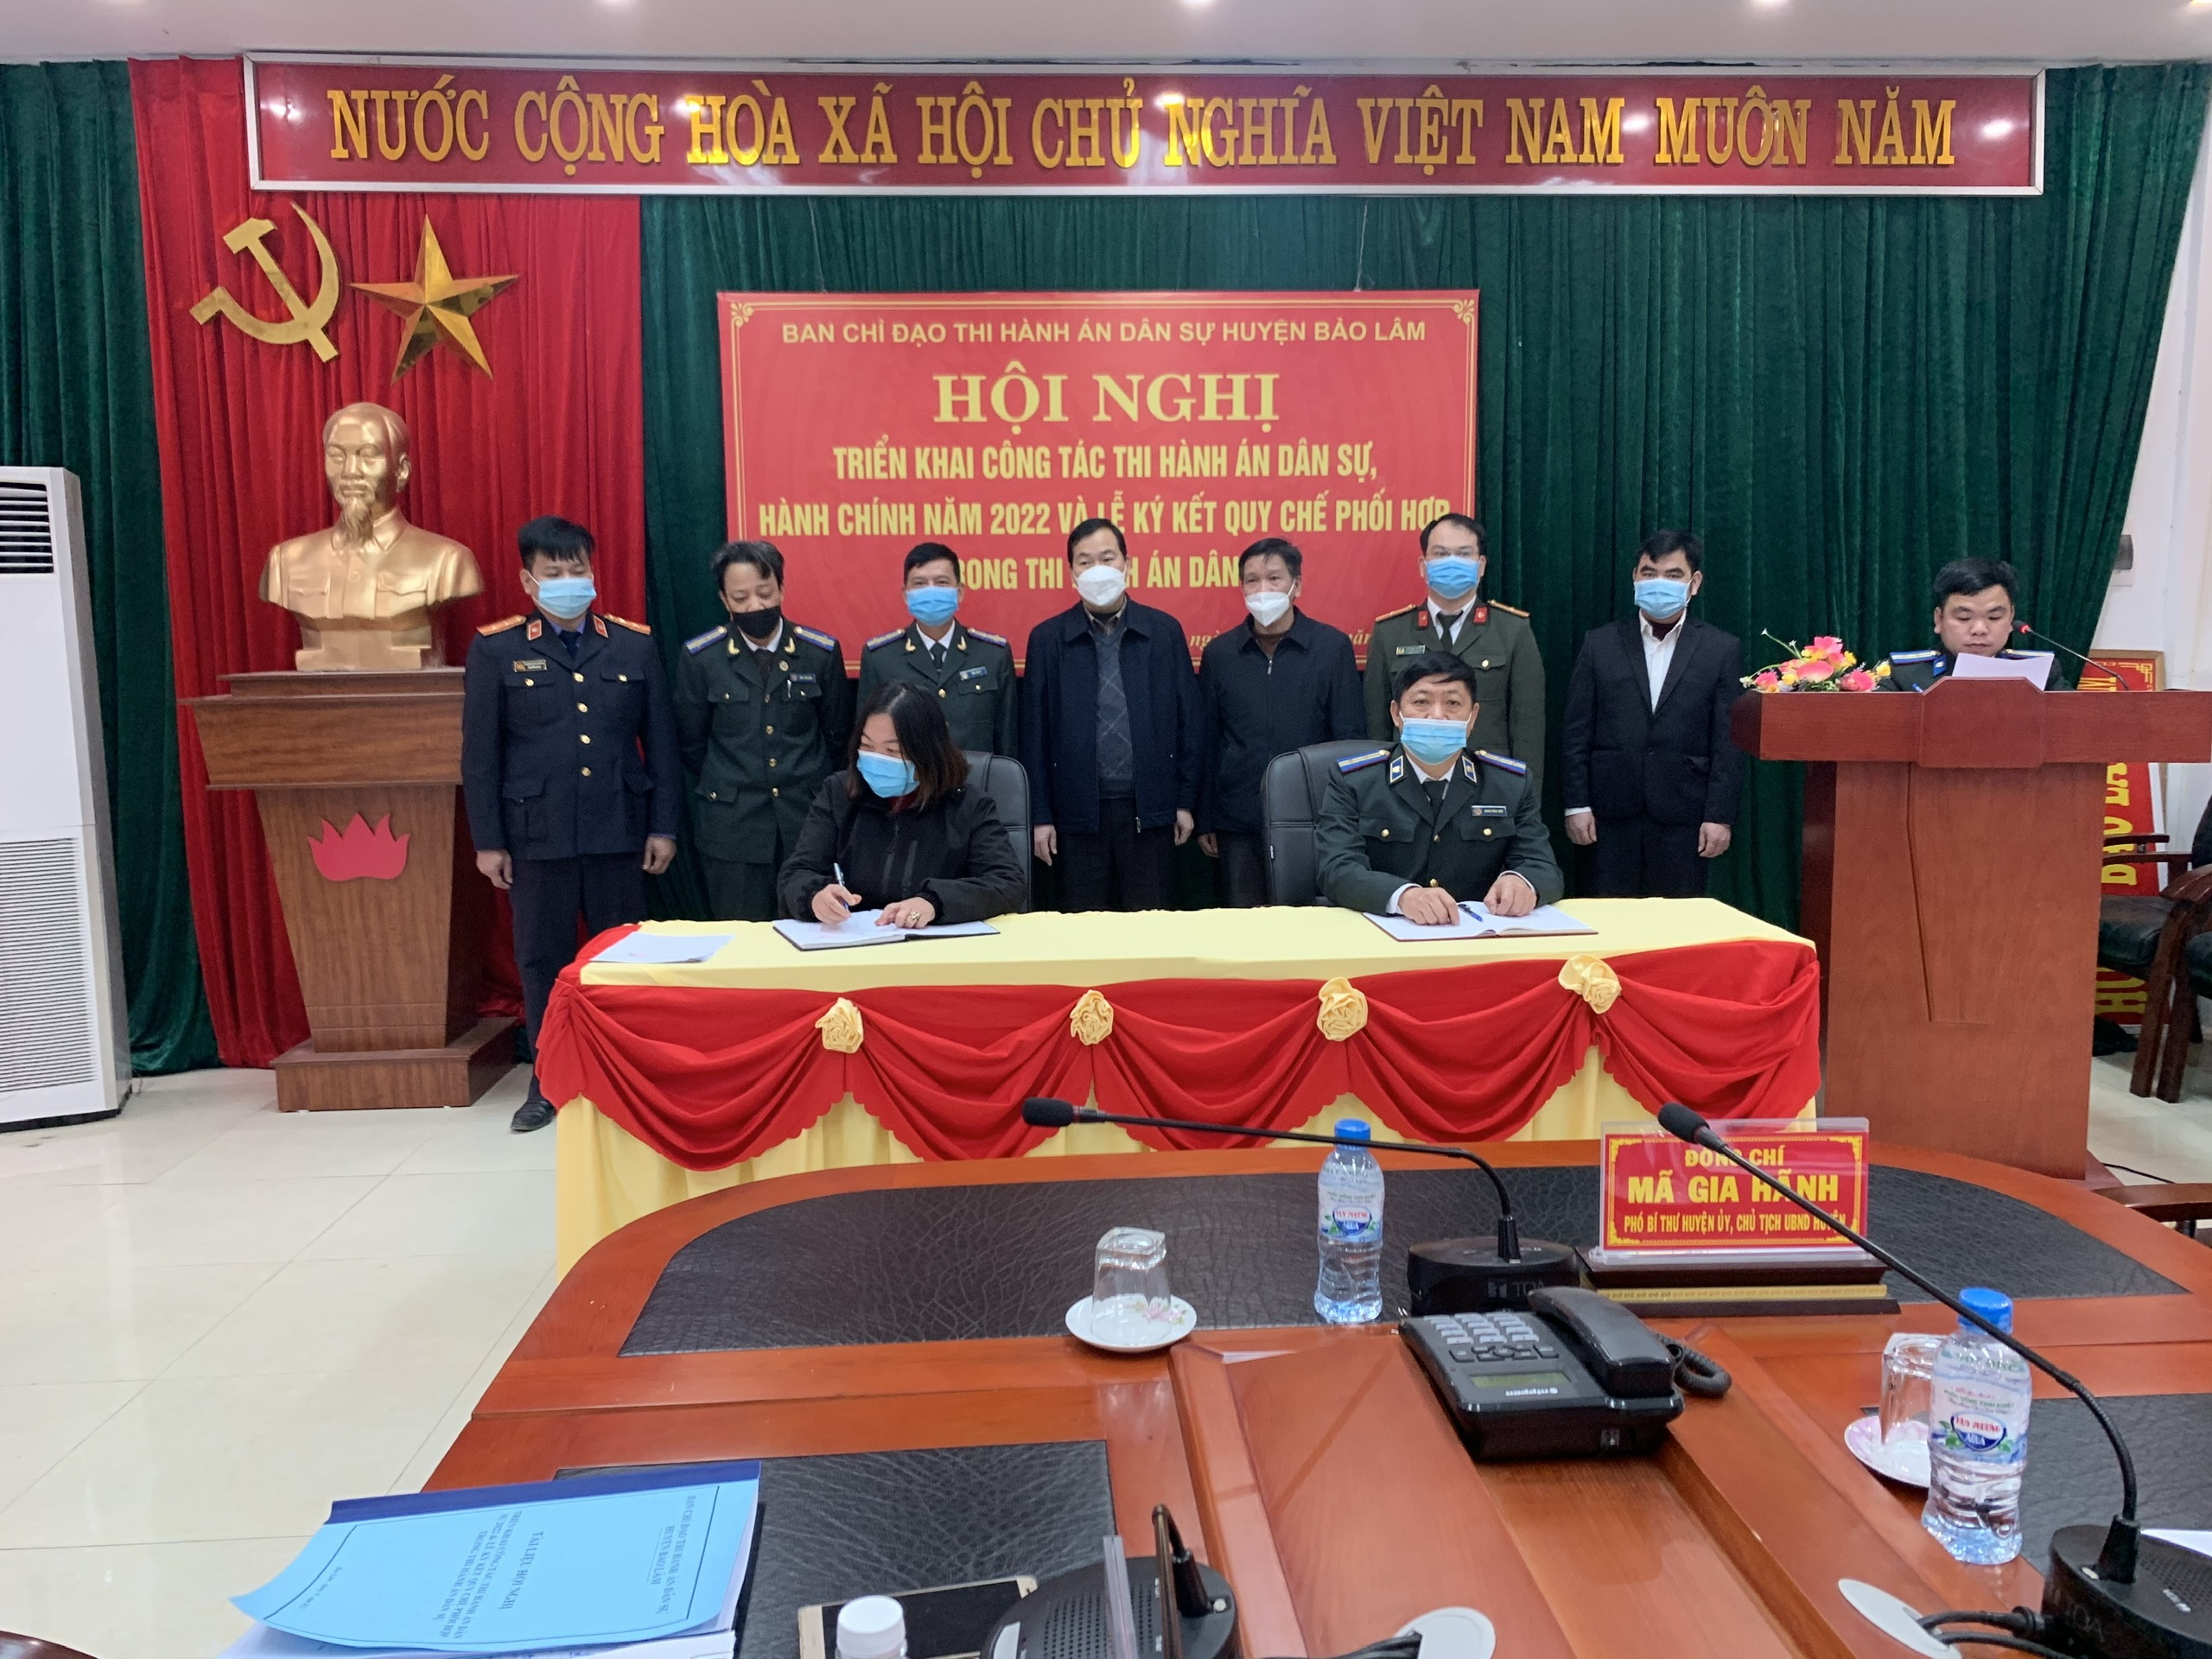 UBND huyện Bảo Lâm - Ban chỉ đạo Thi hành án dân sự đã tổ chức Hội nghị triển khai  công tác thi hành án dân sự, hành chính năm 2022 và Lễ ký kết Quy chế phối hợp giữa Chi cục Thi hành án dân sự huyện với UBND các xã, Thị trấn trong công tác THADS